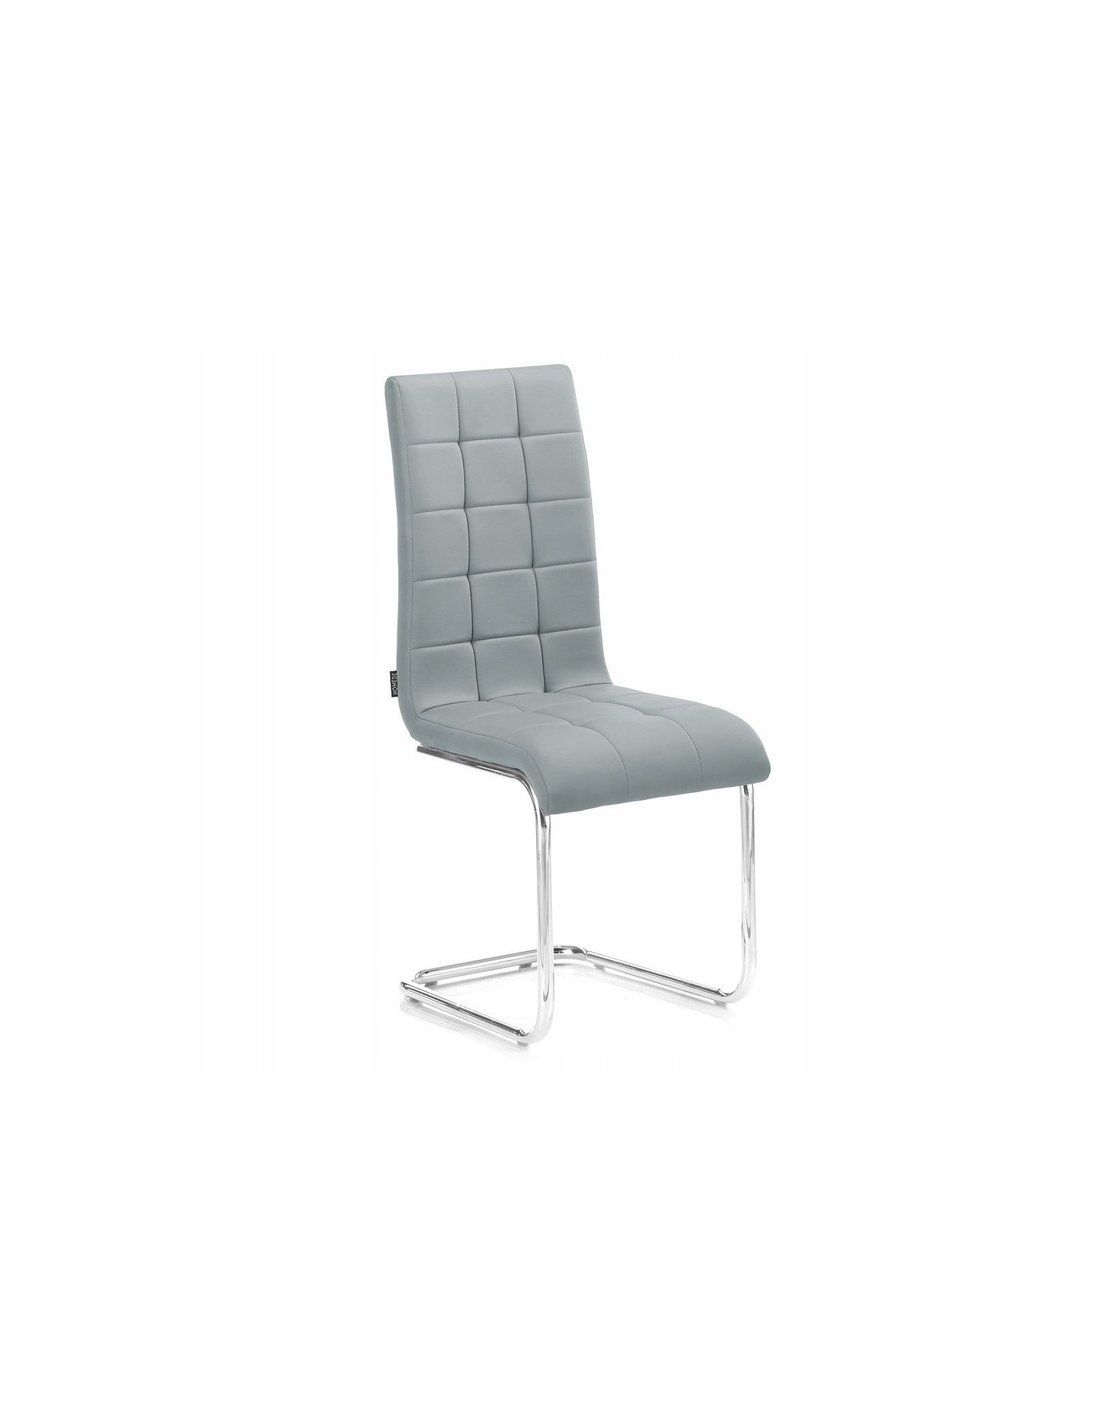 HOMEDE ALCANDER jedálenská kožená stolička - šedá farba